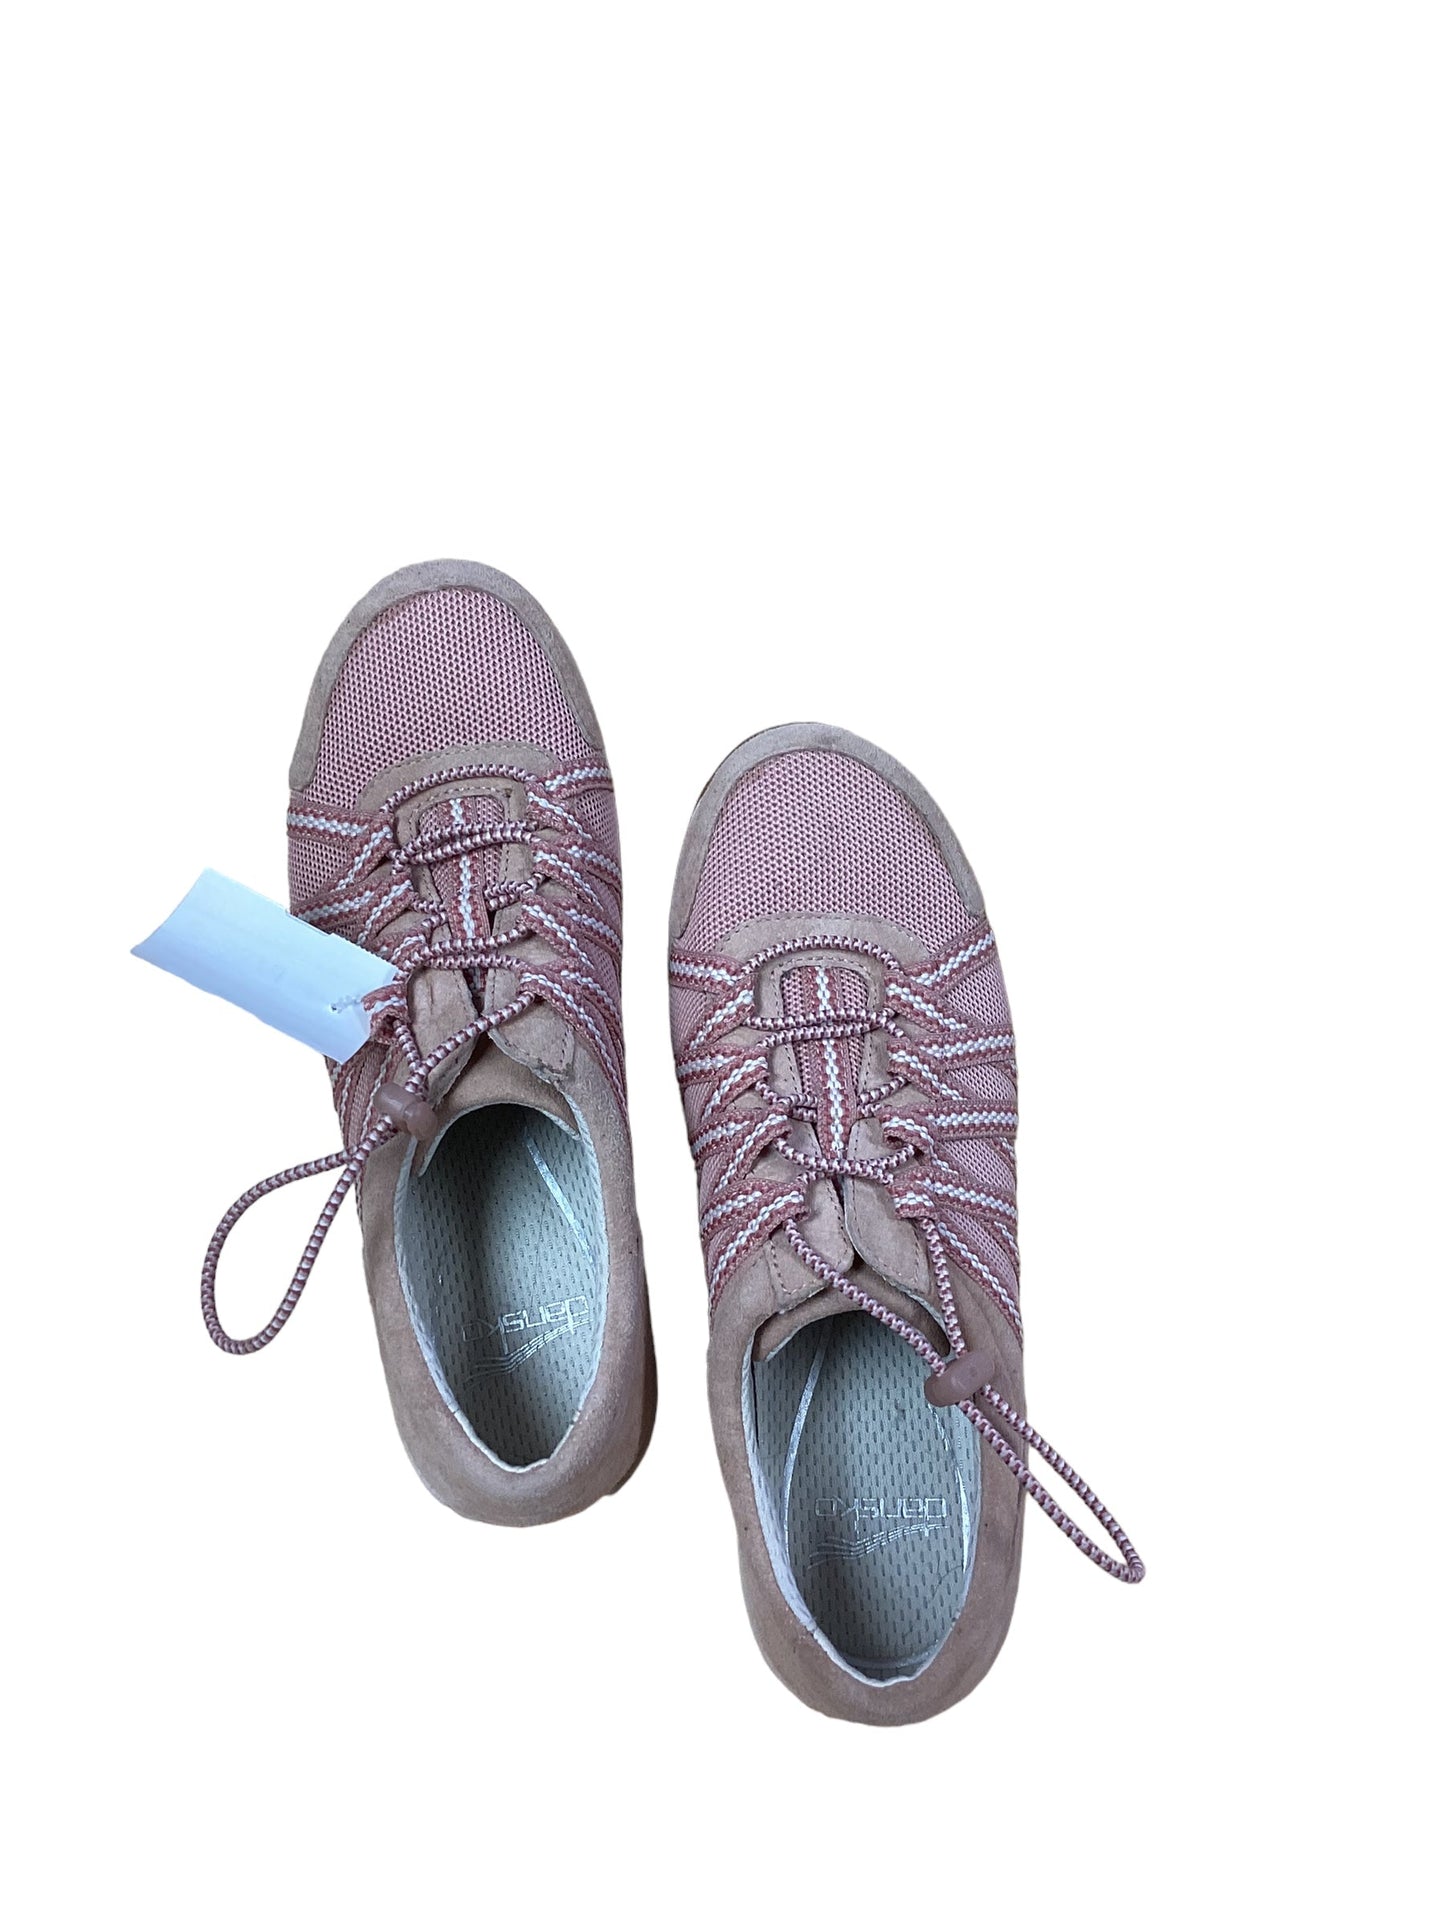 Shoes Flats By Dansko  Size: 7.5